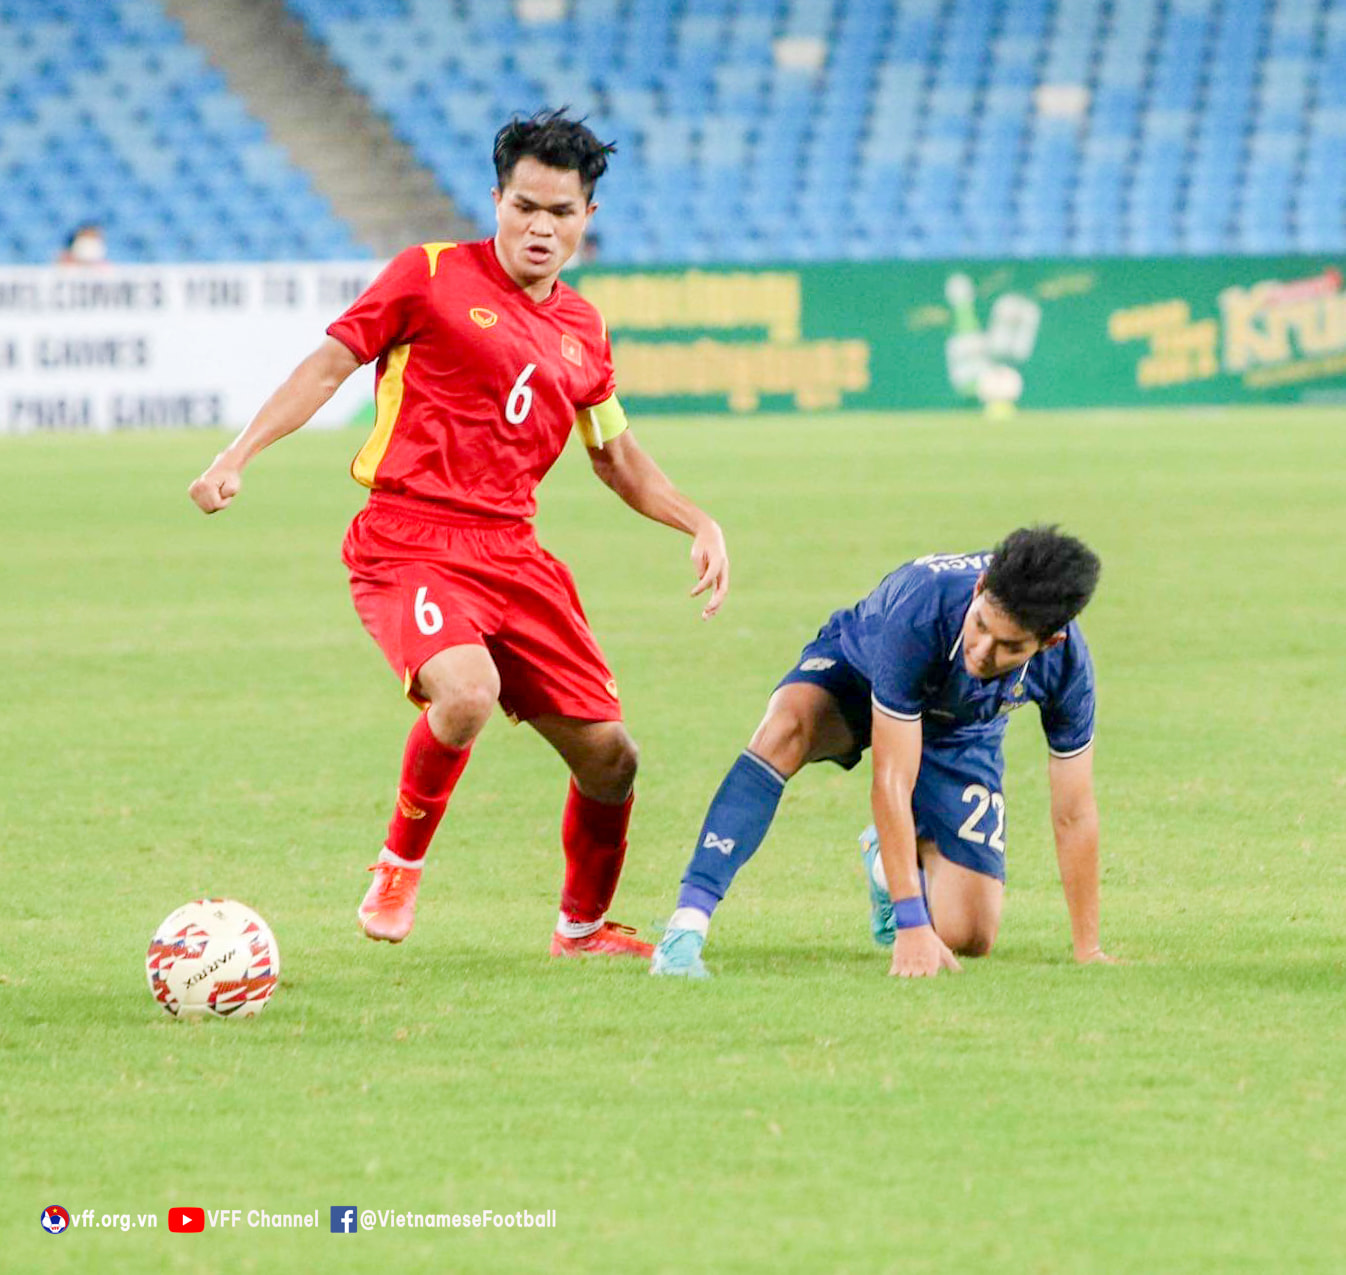 HLV U23 Thái Lan: Tiền đạo đá chung kết của tôi mới 16 tuổi - Ảnh 2